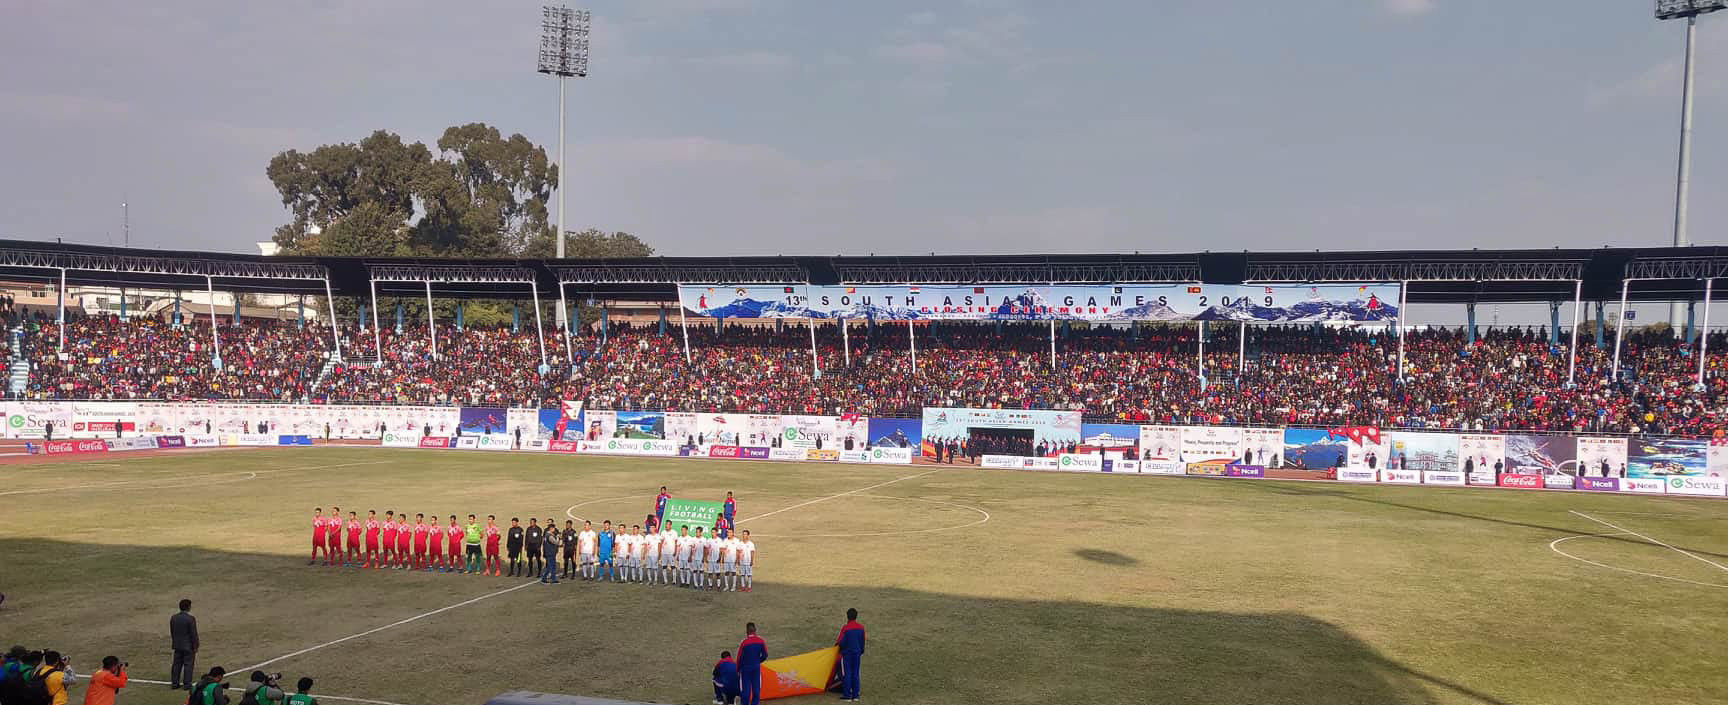 साग पुरुष फुटबल : नेपाल र भुटानकाे खेल जारी, नेपाललाई १ गाेलकाे अग्रता